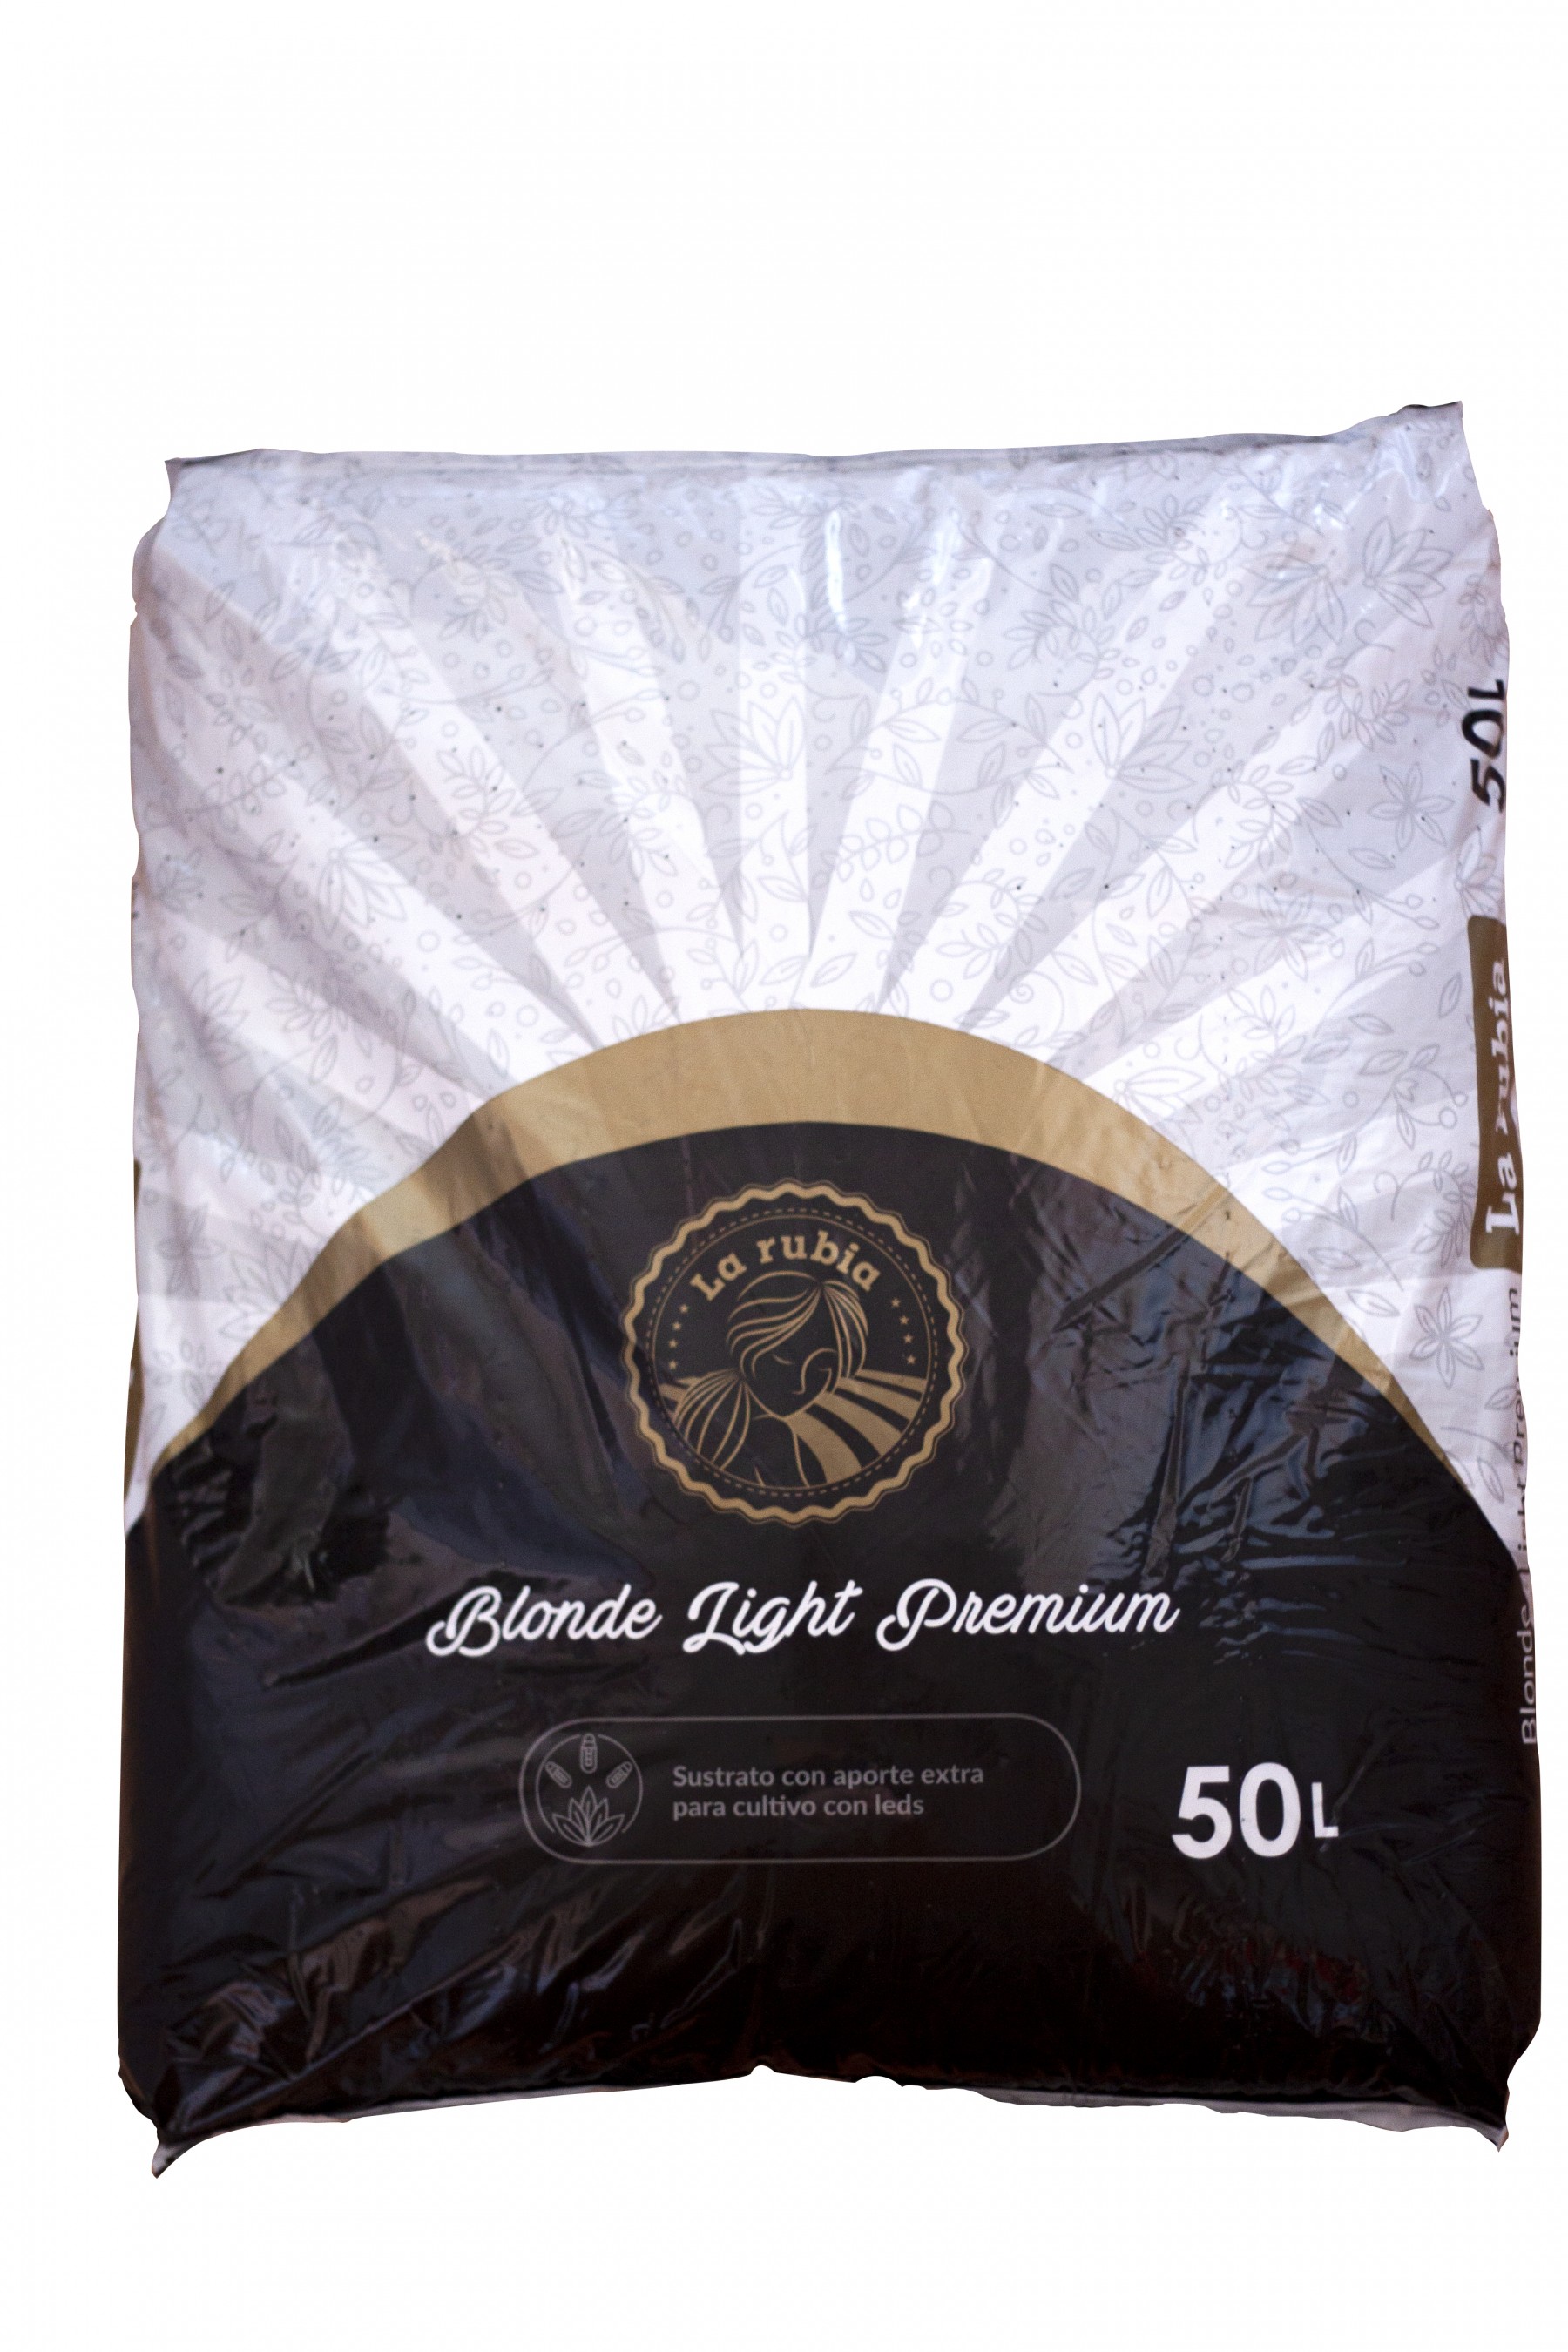 Sustrato La Rubia 50 L Blonde Light Premium 1